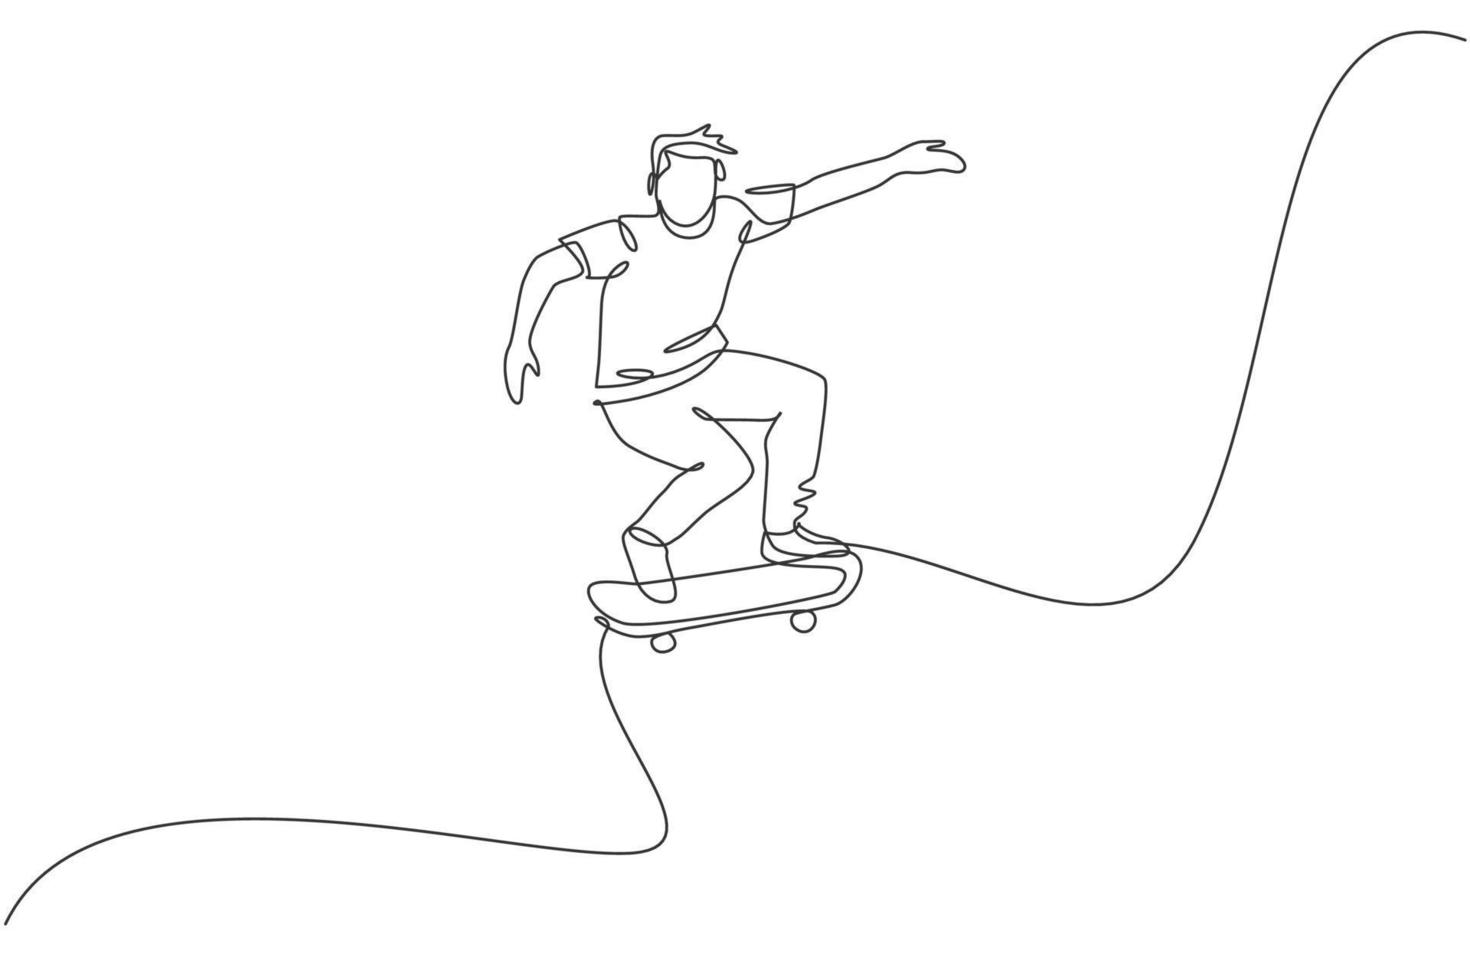 einzelne durchgehende Linienzeichnung eines jungen coolen Skateboardfahrers, der Schlittschuh reitet und Sprungtrick im Skatepark durchführt. Üben des Outdoor-Sportkonzepts. trendige einzeilige zeichnen design-vektorillustration vektor